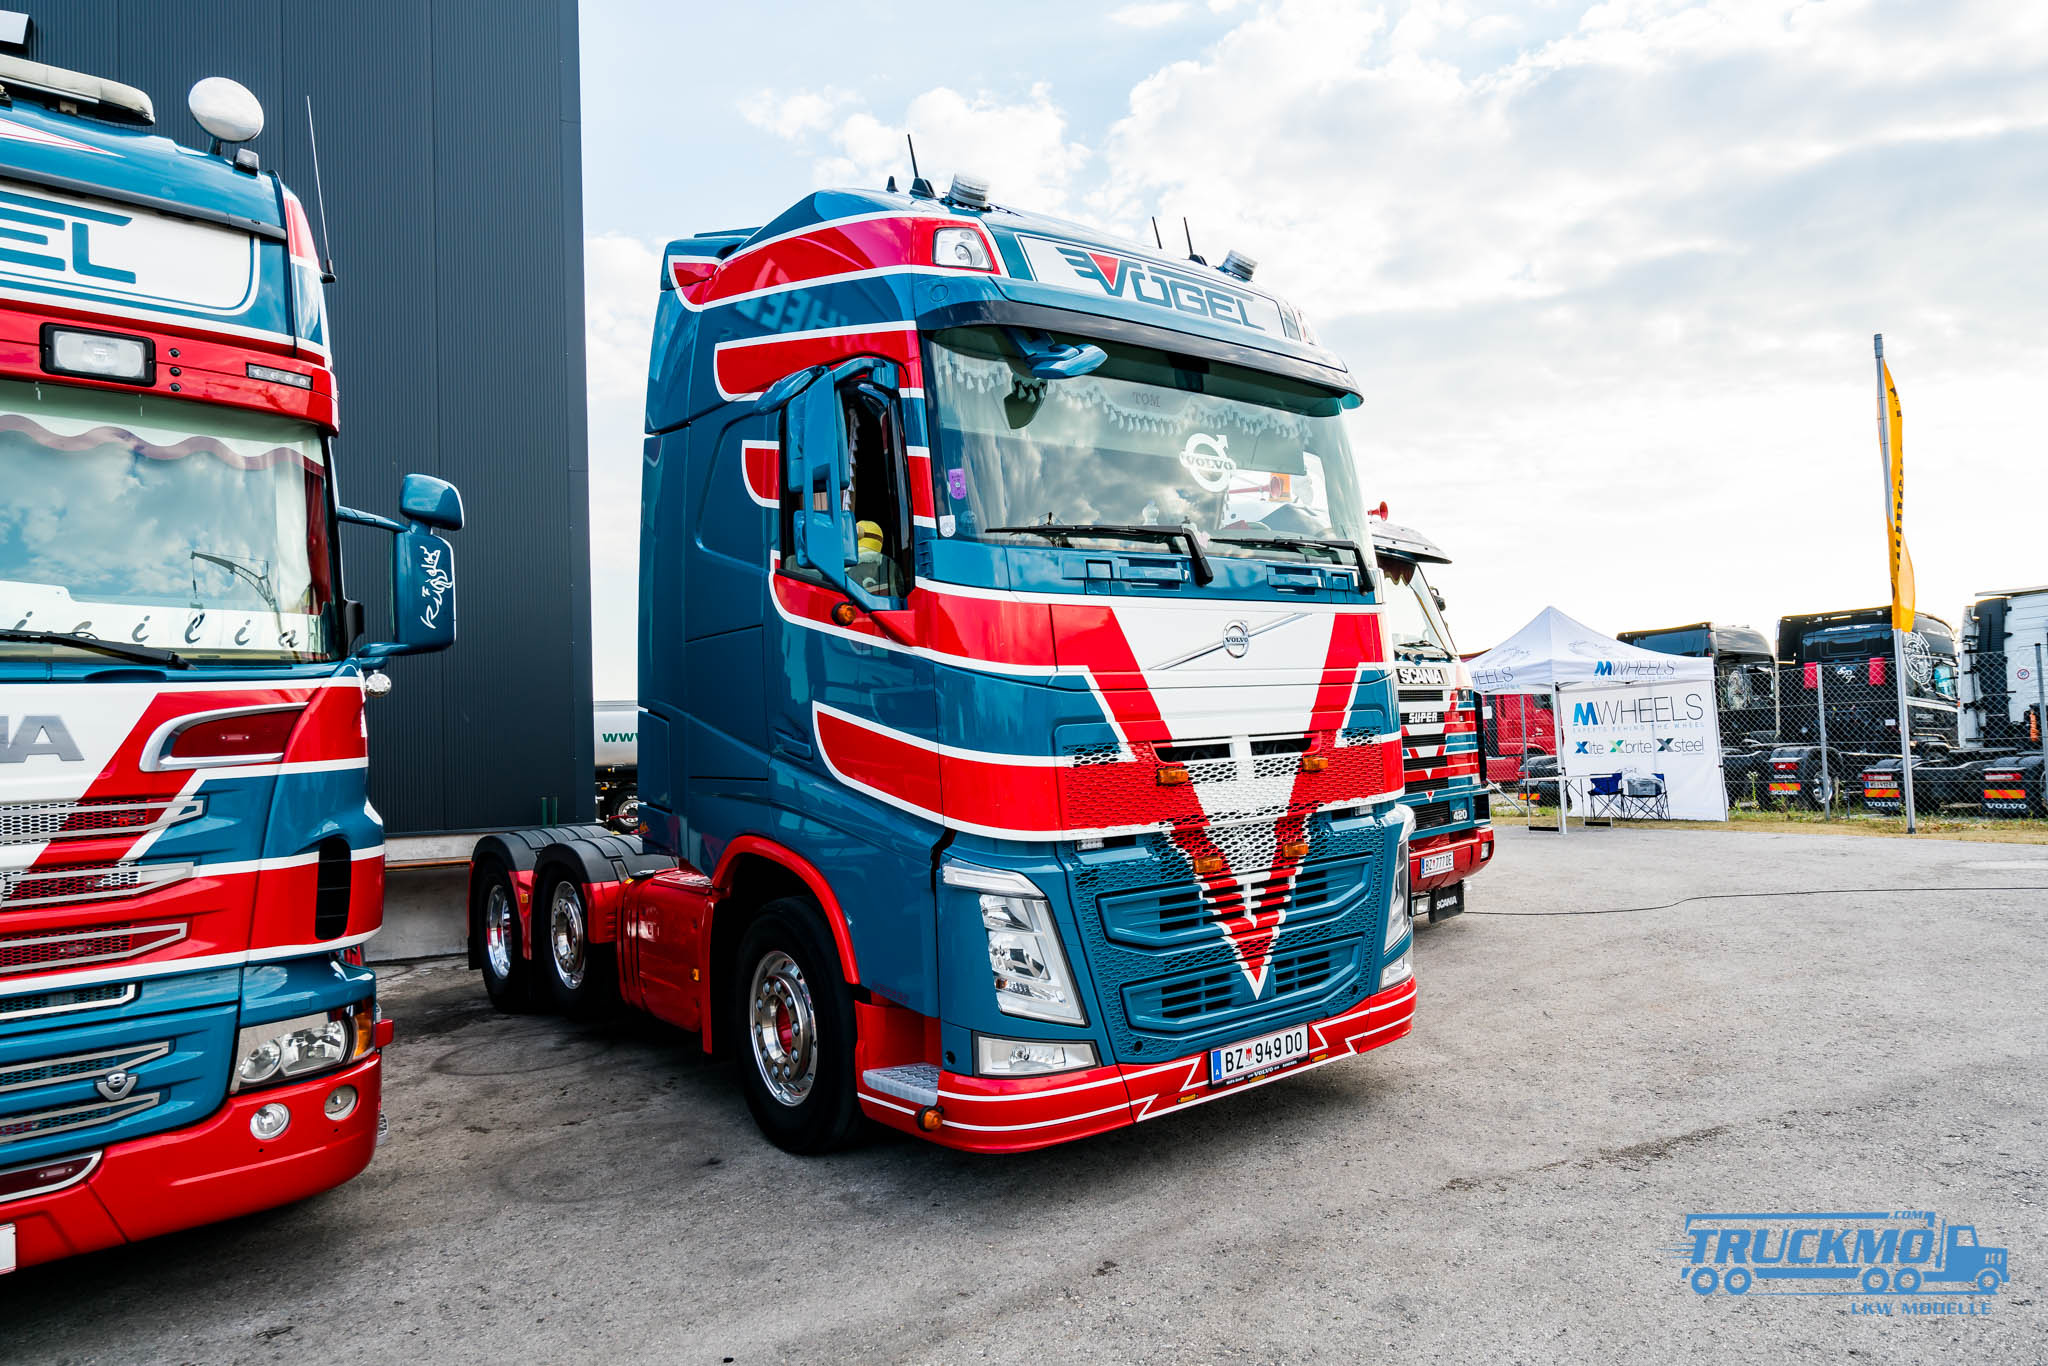 Truck_Event_Austria_Vorchdorf_2017_Truckmo_Scania_MAN_Volvo_Mercedes_Iveco_Showtruck_LKW (10 von 96)